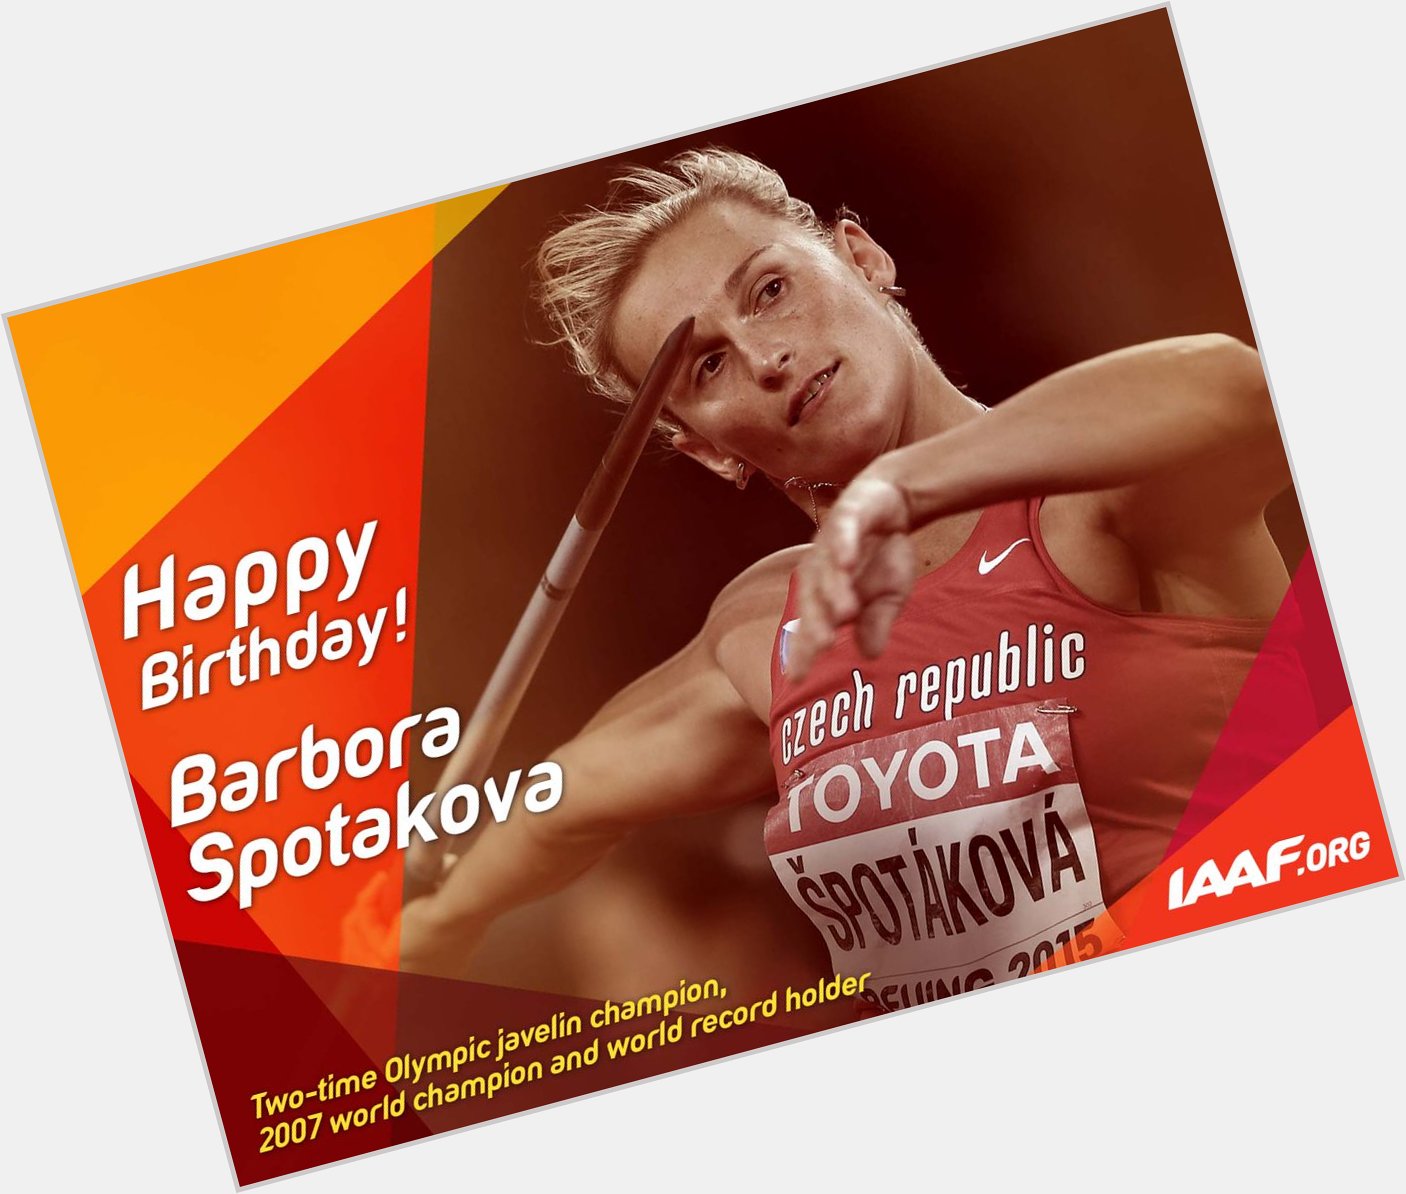 Happy birthday to javelin world record holder Barbora Spotakova! 